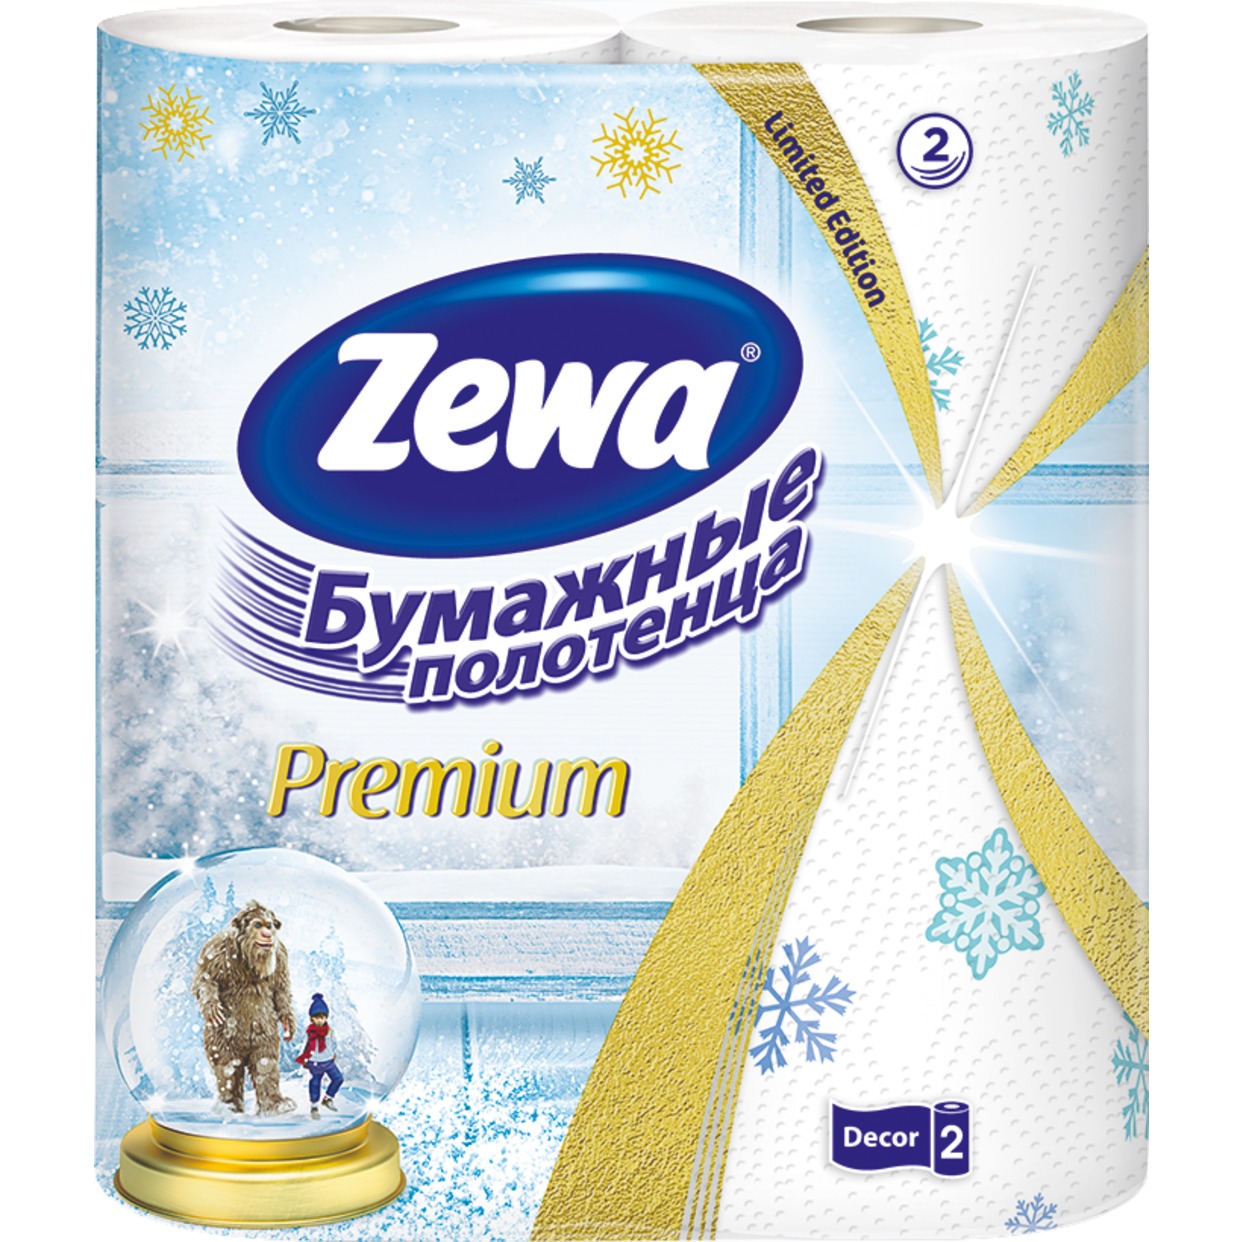 ZEWA Полотенца бумажные по акции в Пятерочке